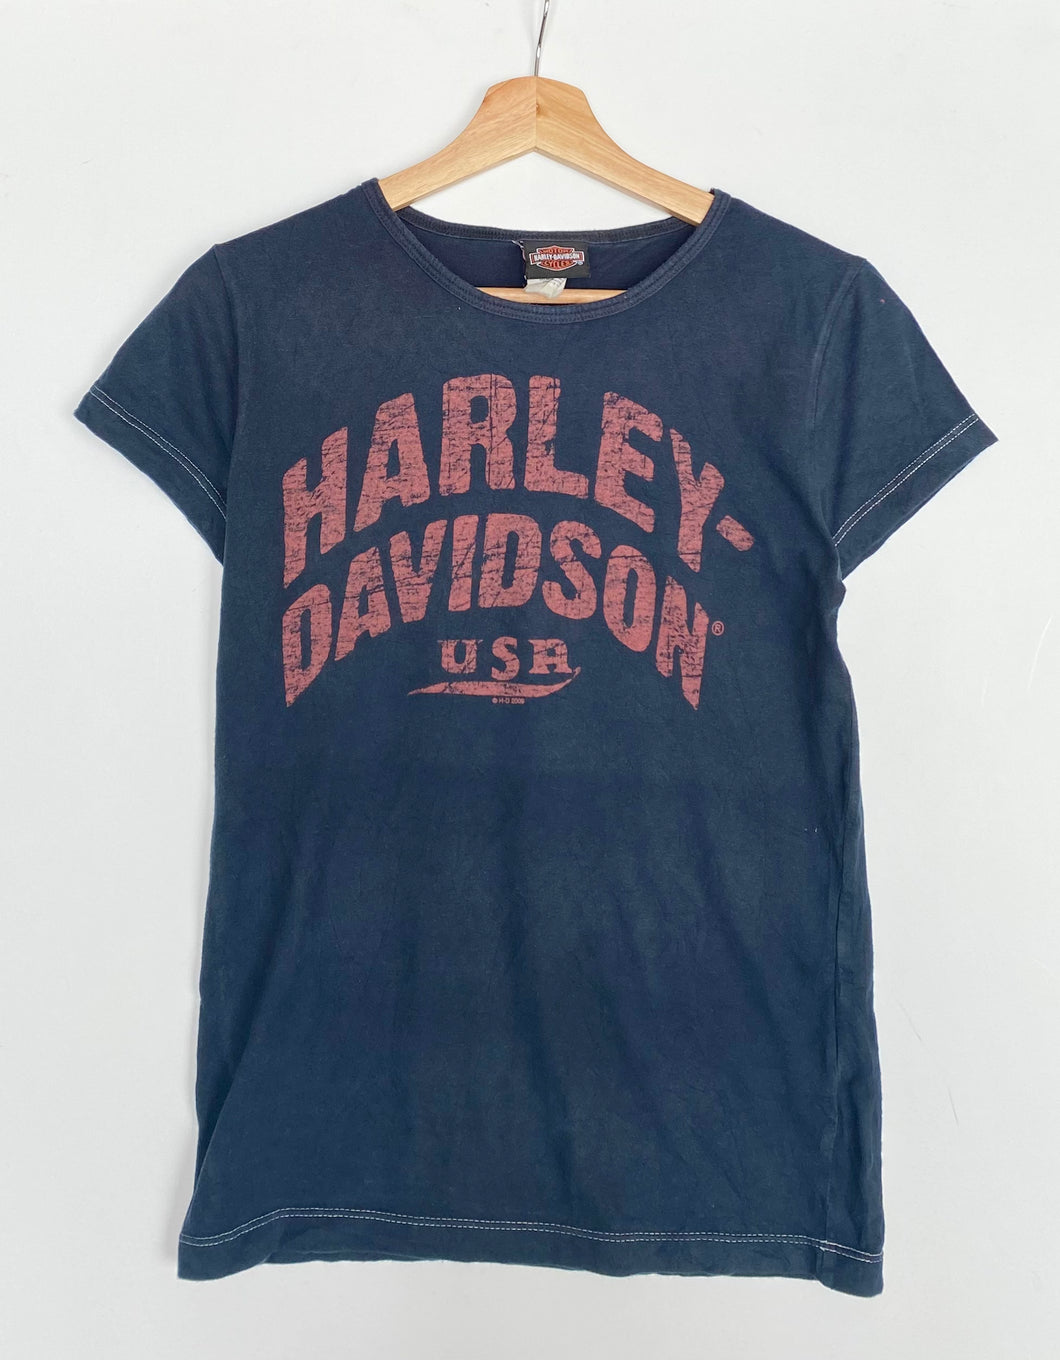 Harley Davidson t-shirt (L)